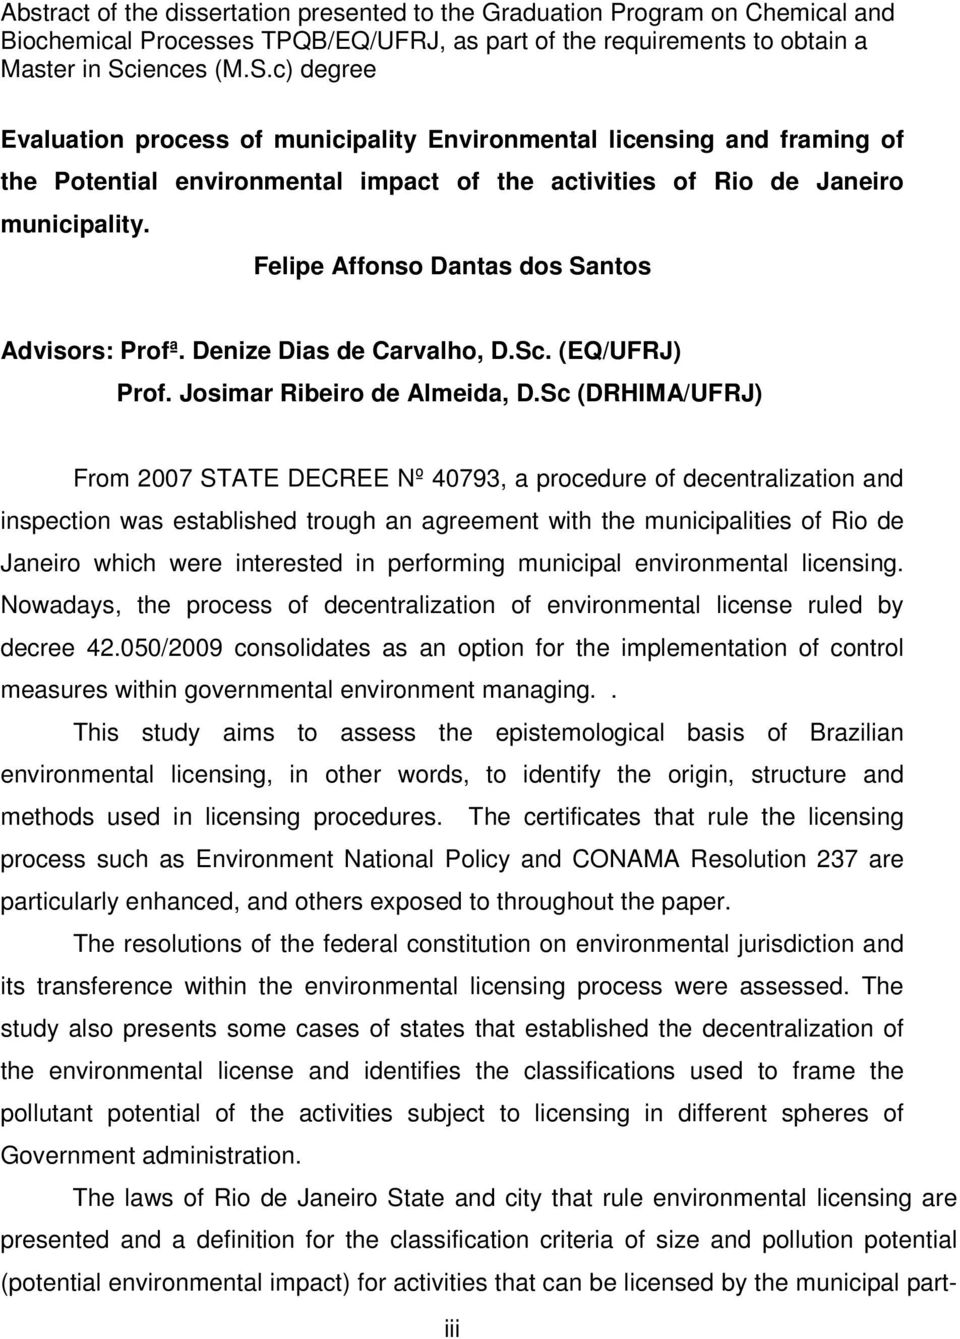 Felipe Affonso Dantas dos Santos Advisors: Profª. Denize Dias de Carvalho, D.Sc. (EQ/UFRJ) Prof. Josimar Ribeiro de Almeida, D.